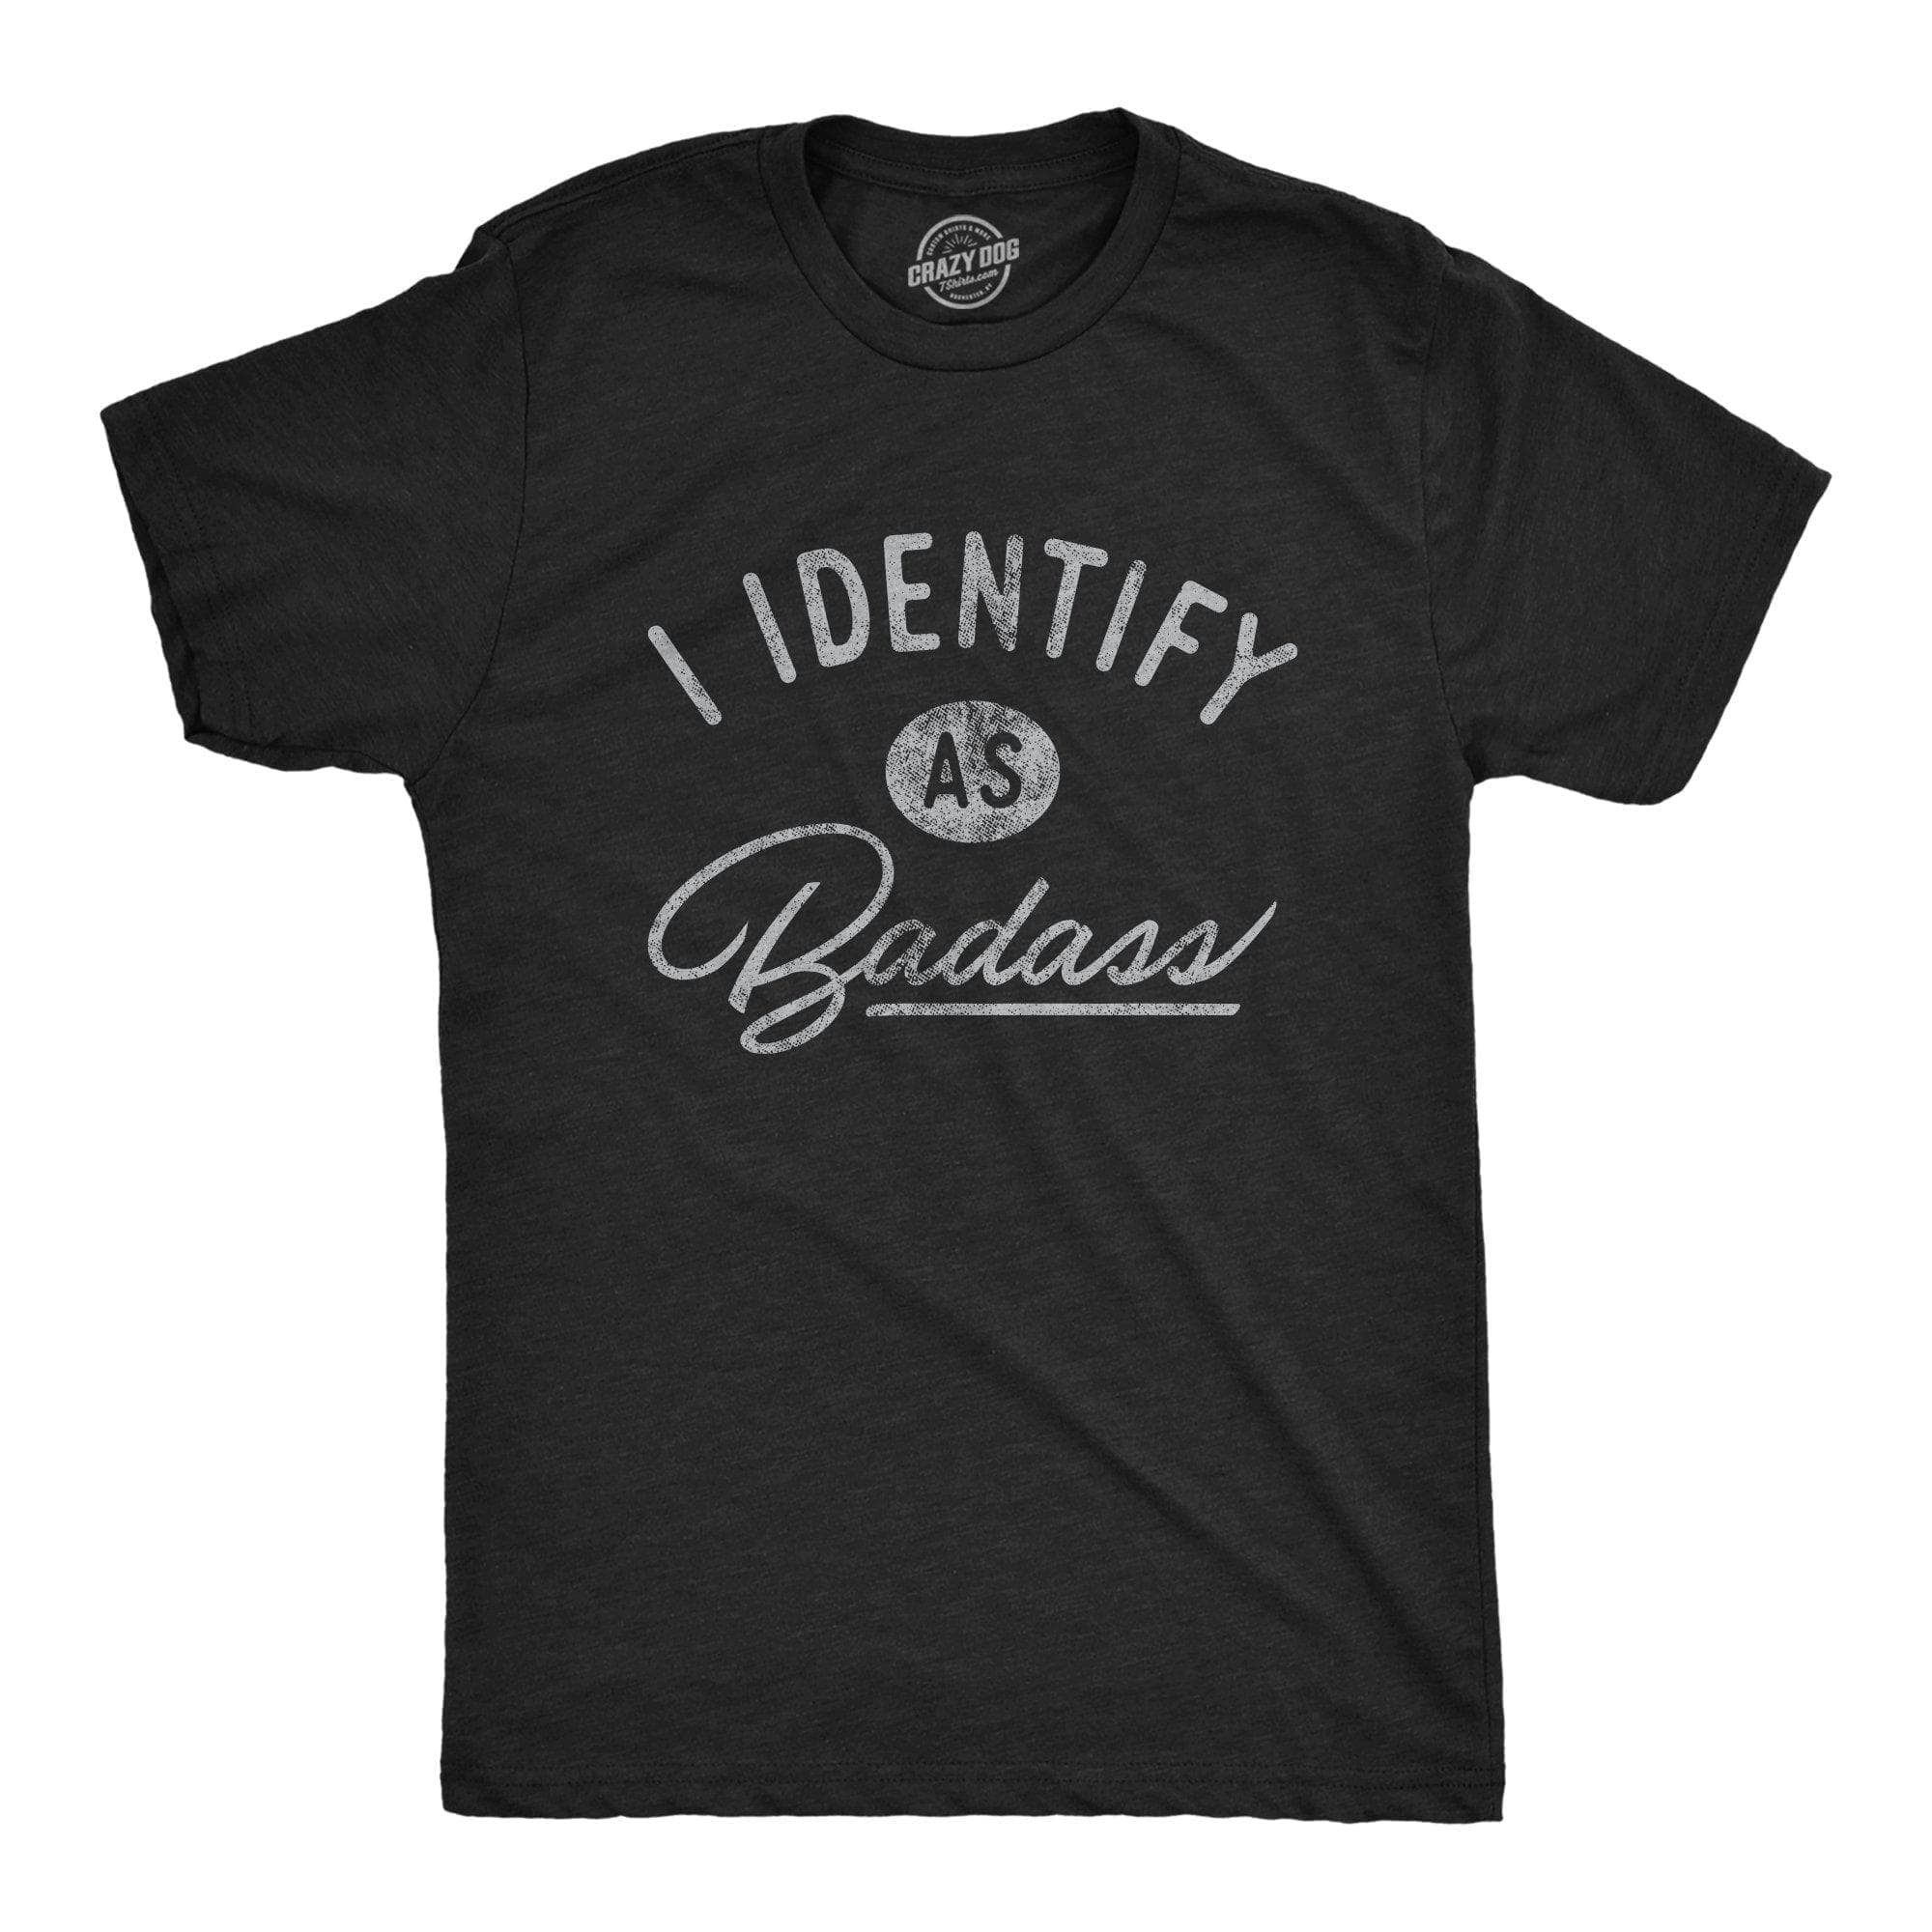 I Identify As A Badass Men's Tshirt - Crazy Dog T-Shirts